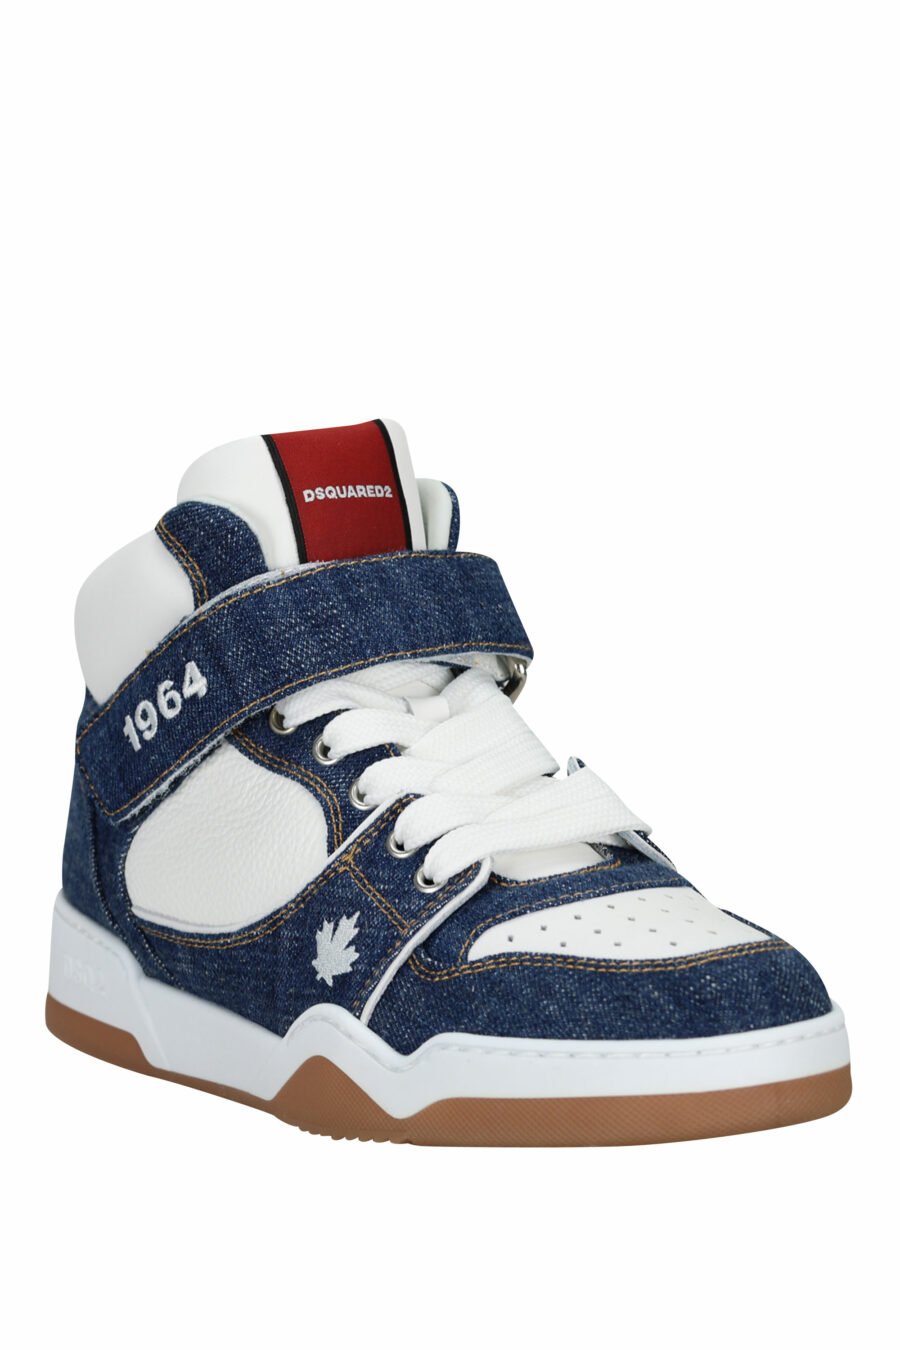 Zapatillas azules denim "spyker" blancas altas con logo - 8055777306079 1